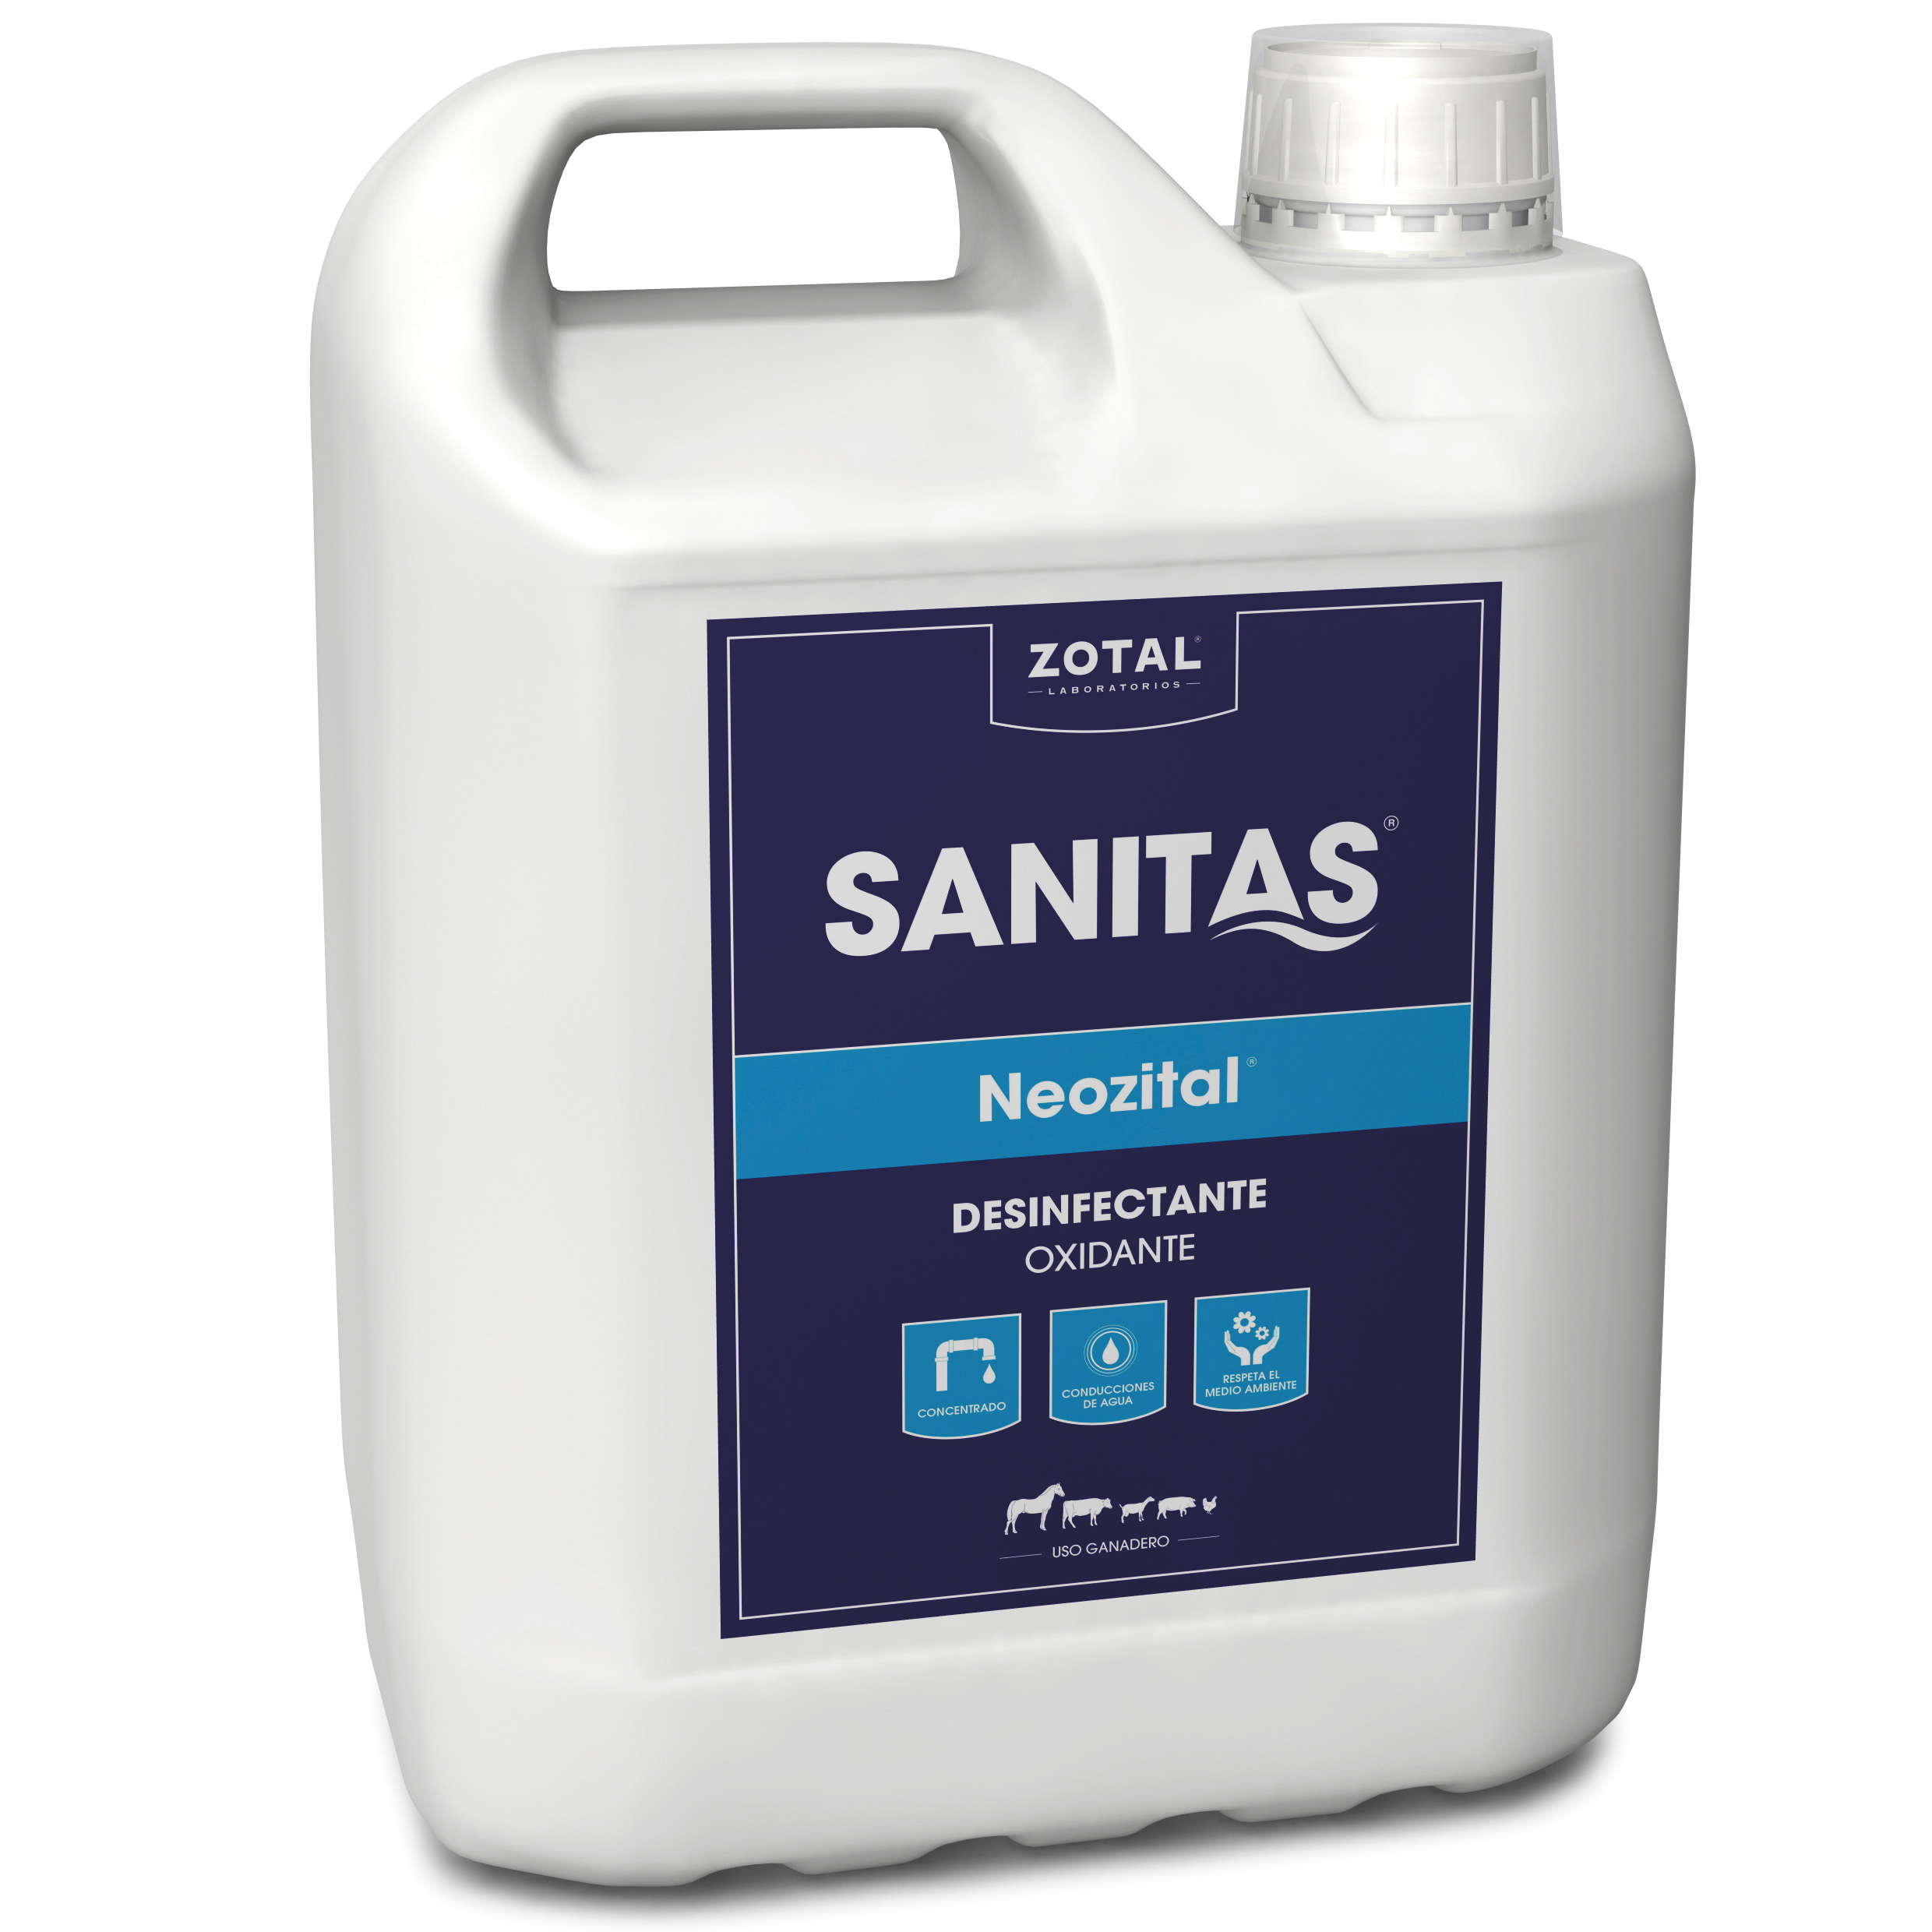 SANITAS® Neozital: Desinfectante Oxidante